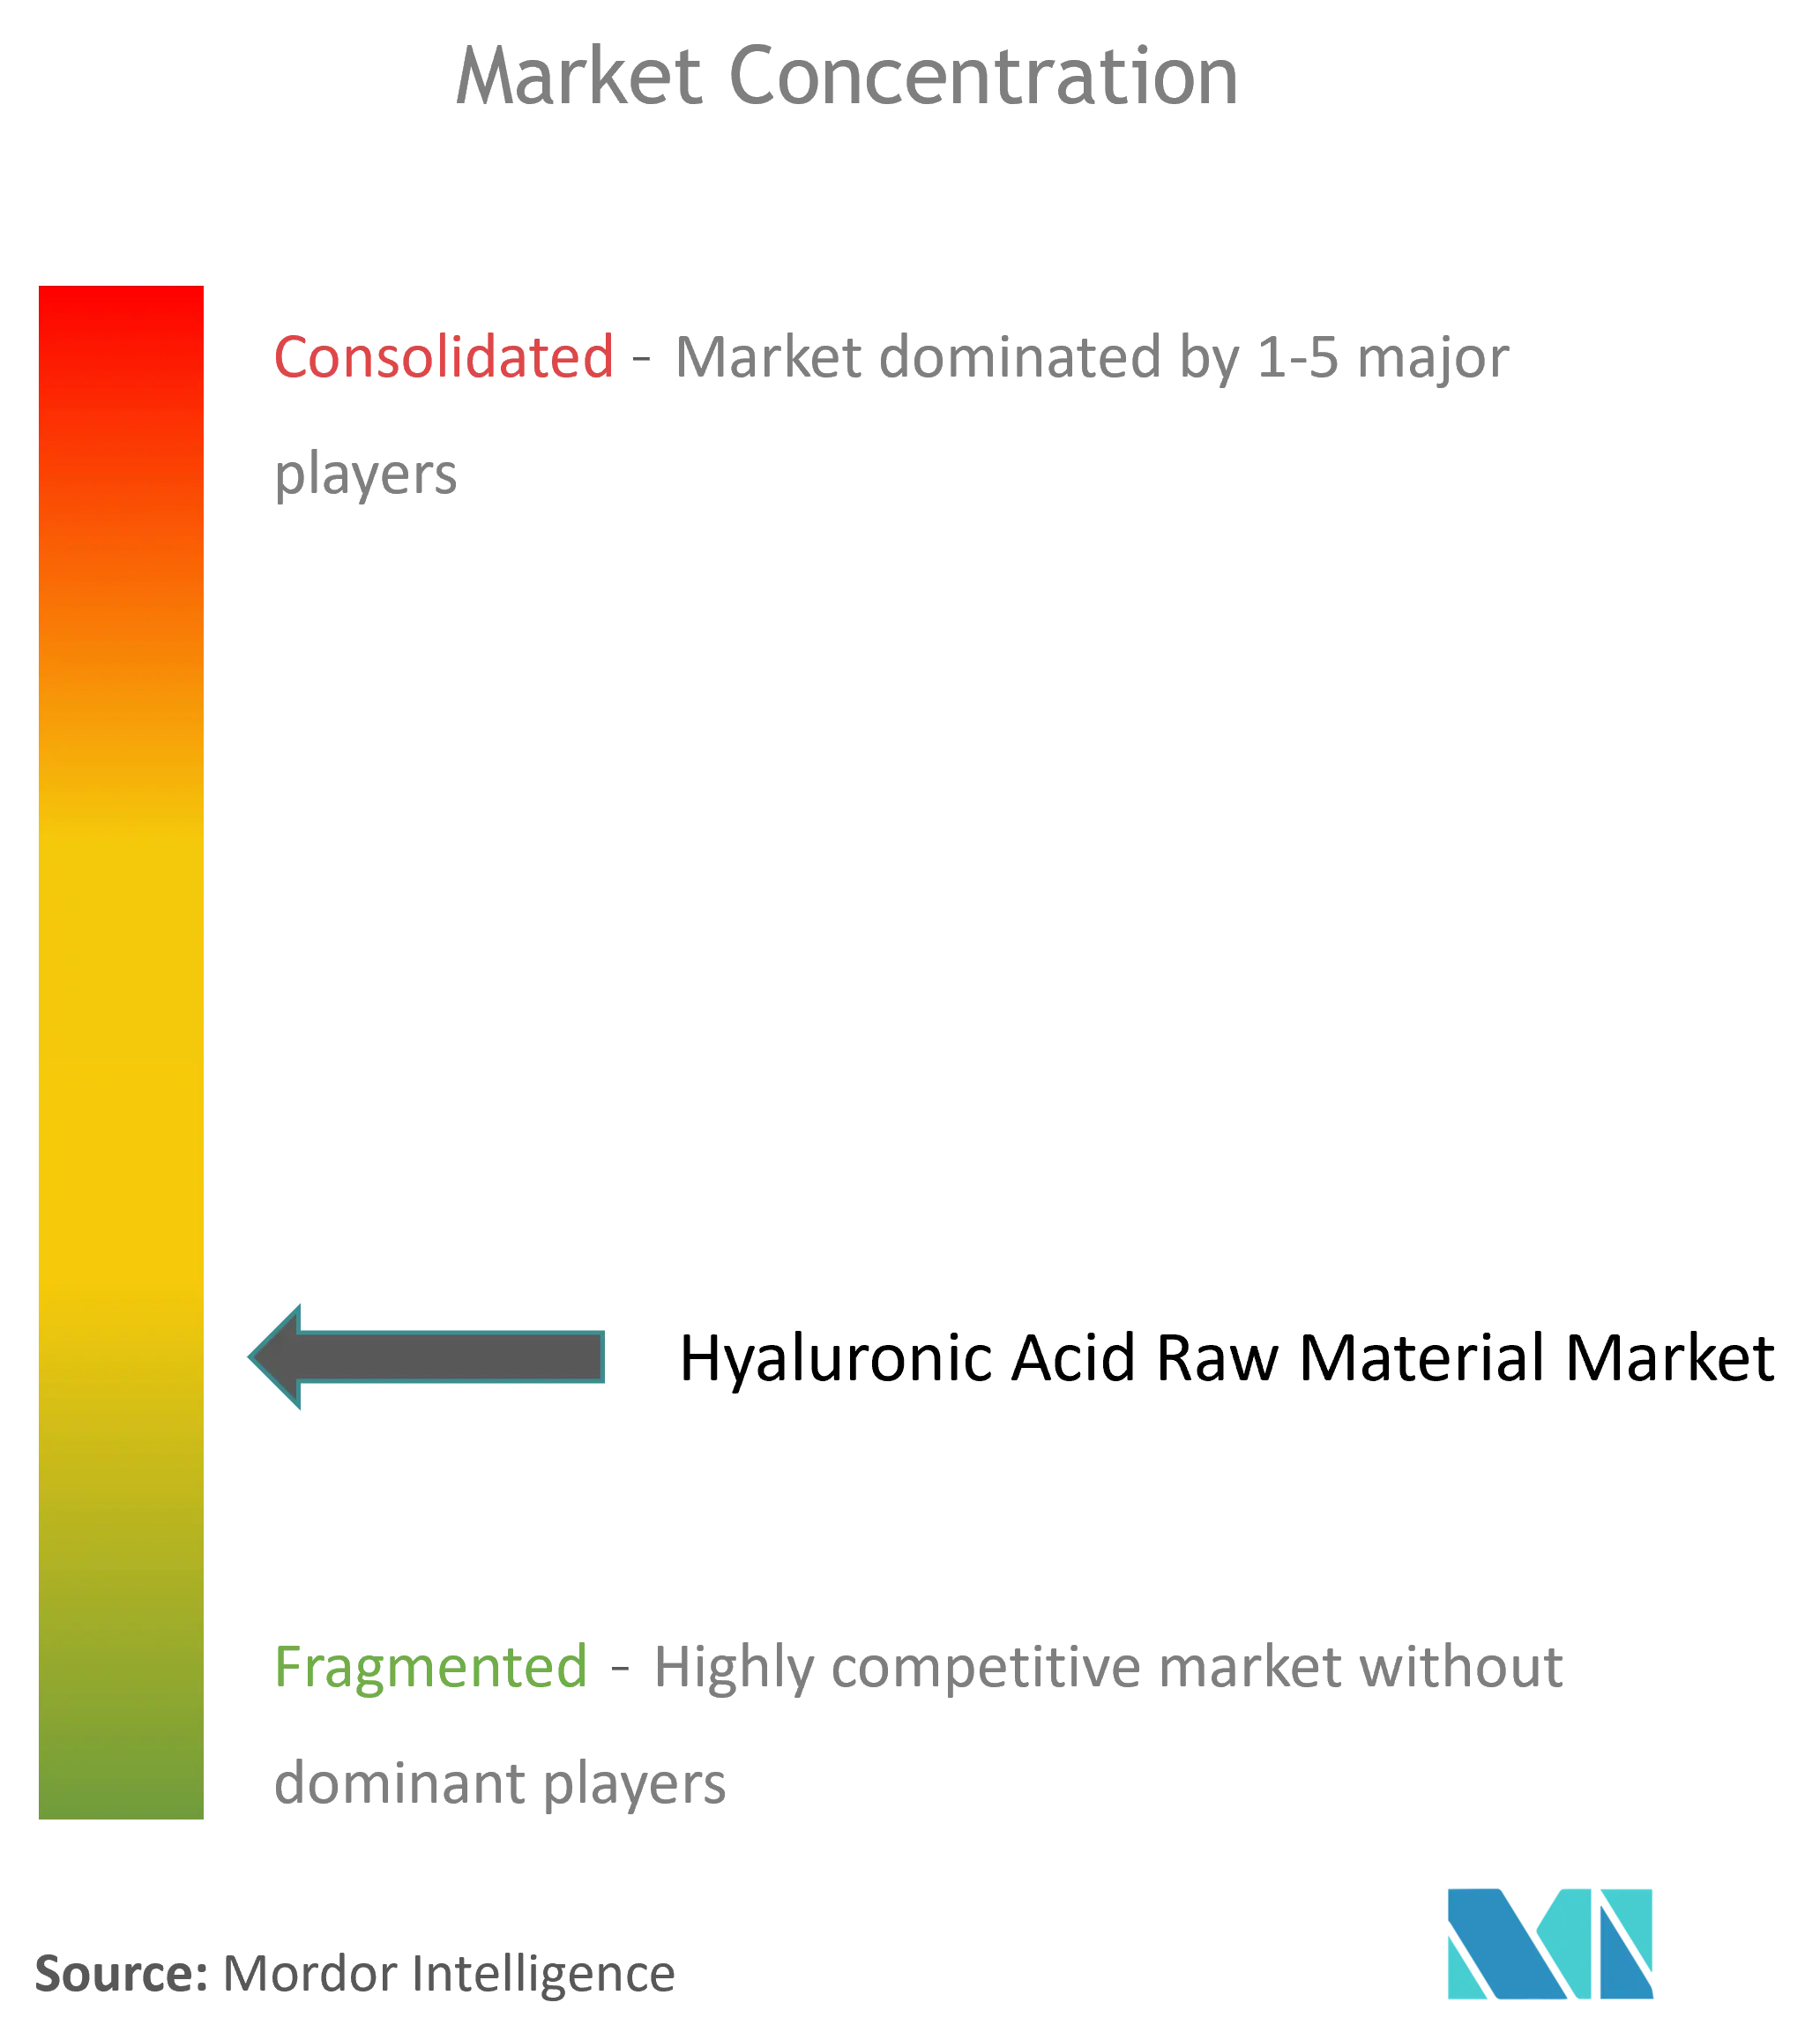 Hyaluronsäure-RohstoffMarktkonzentration